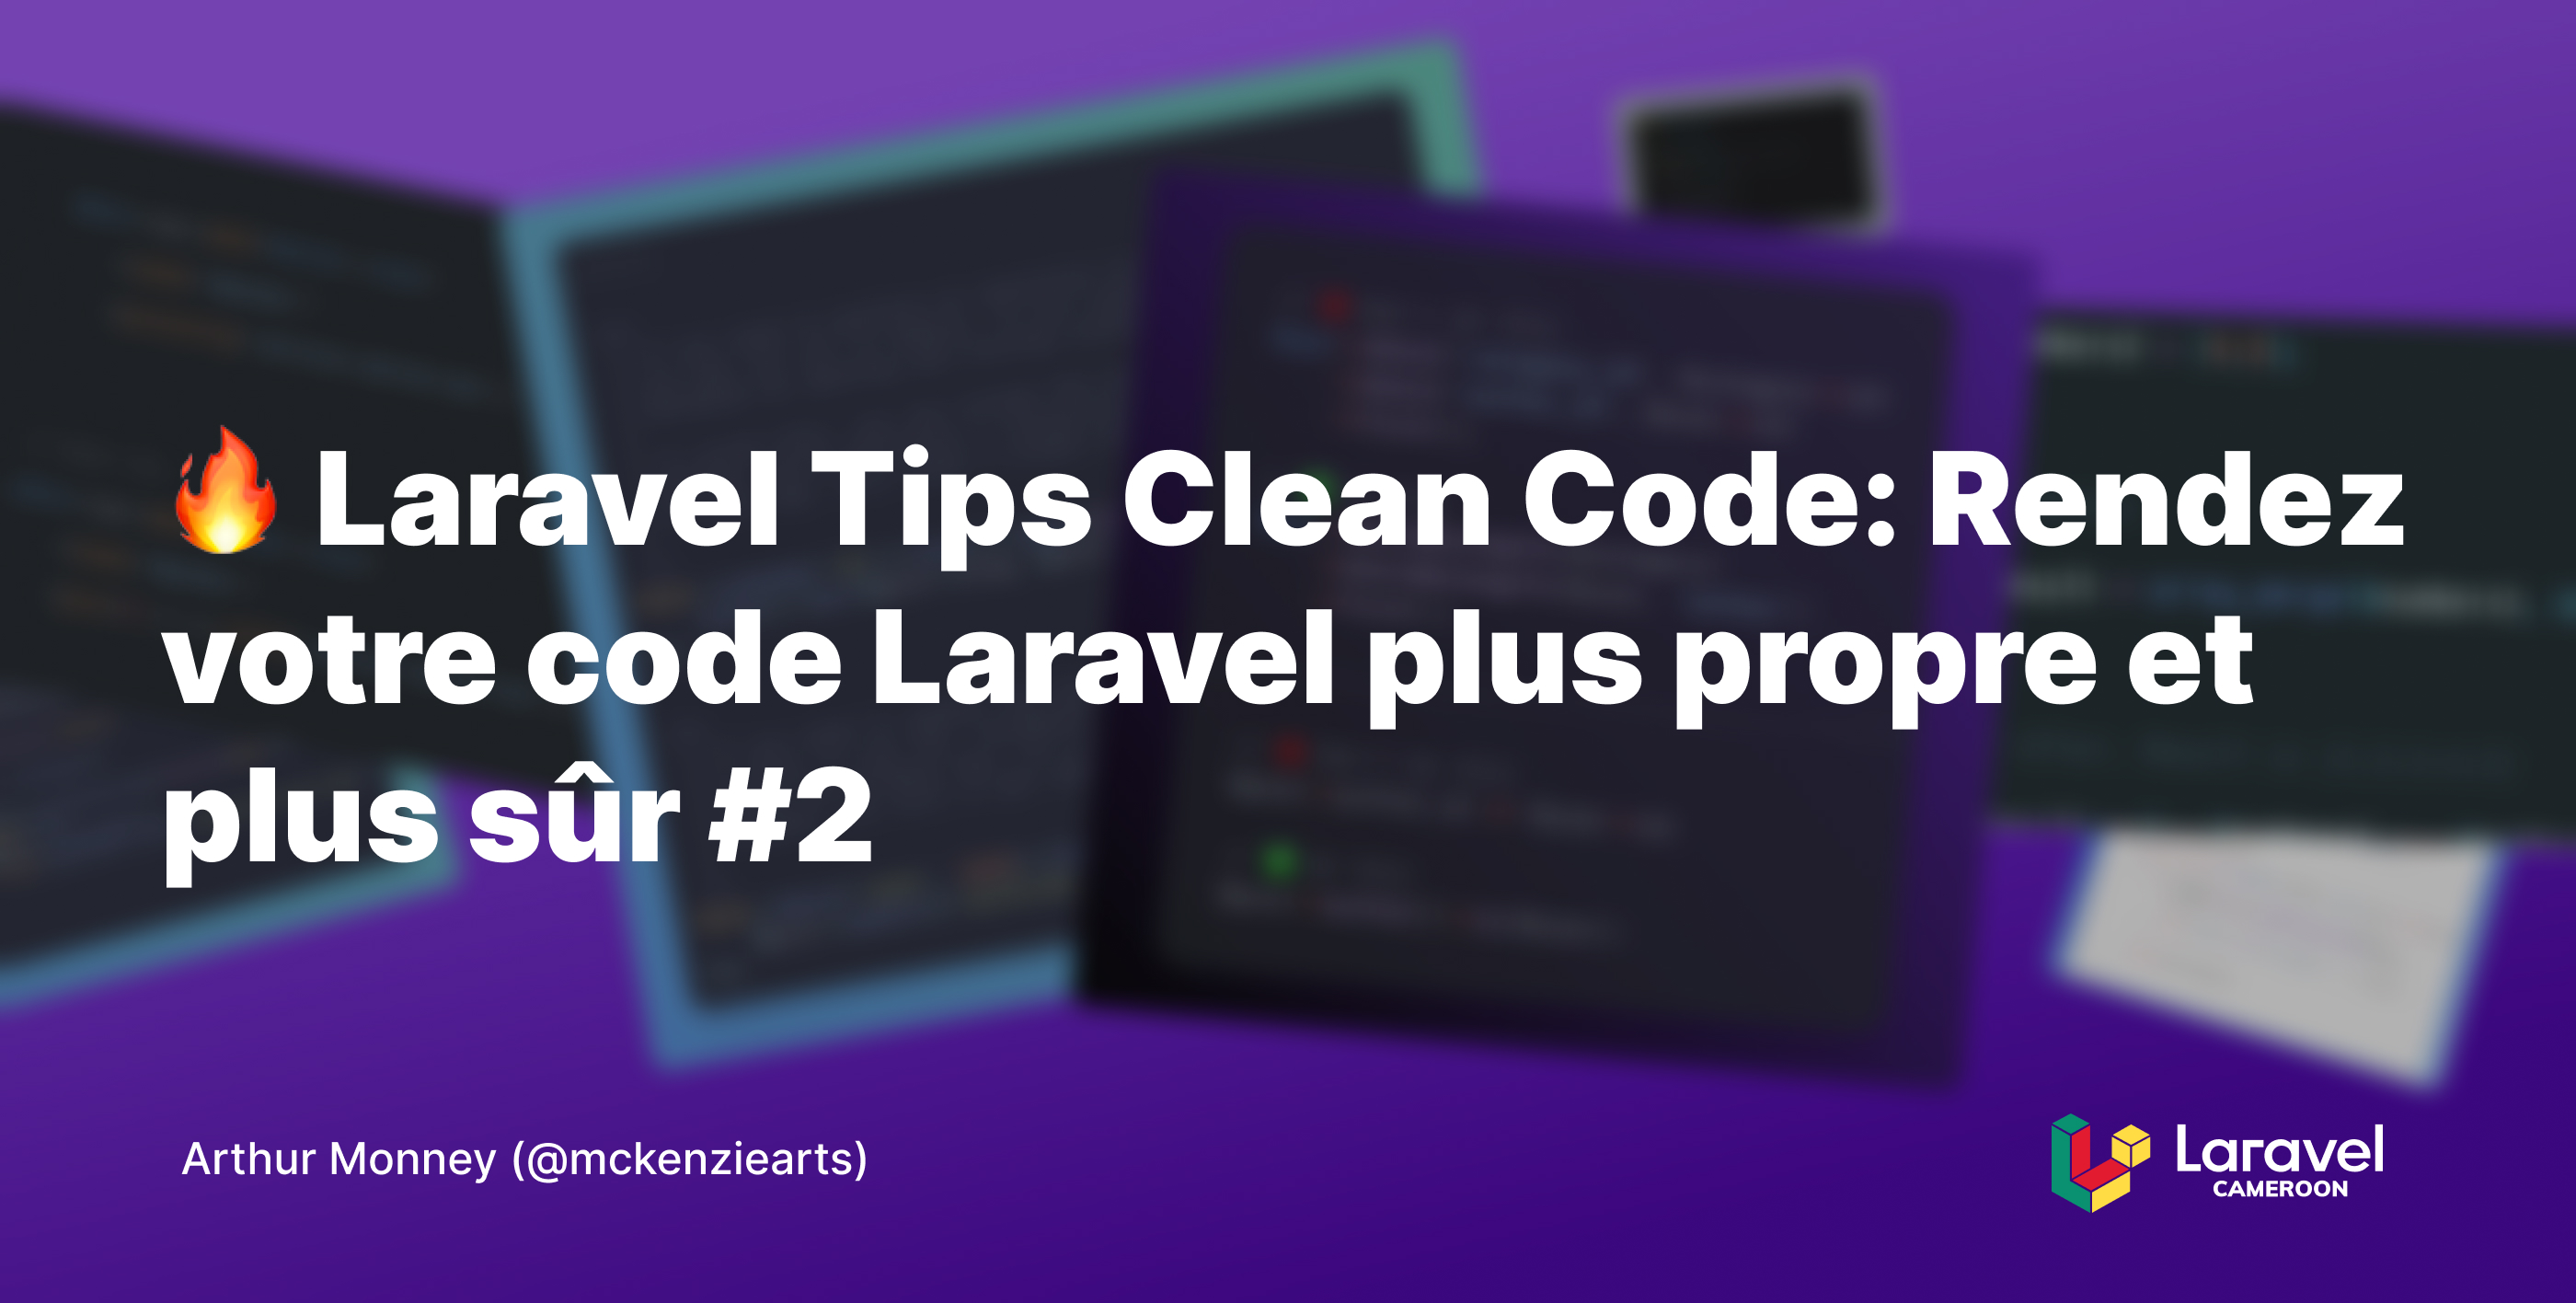 Laravel Tips Clean Code: Rendez votre code Laravel plus propre et plus sûr #2